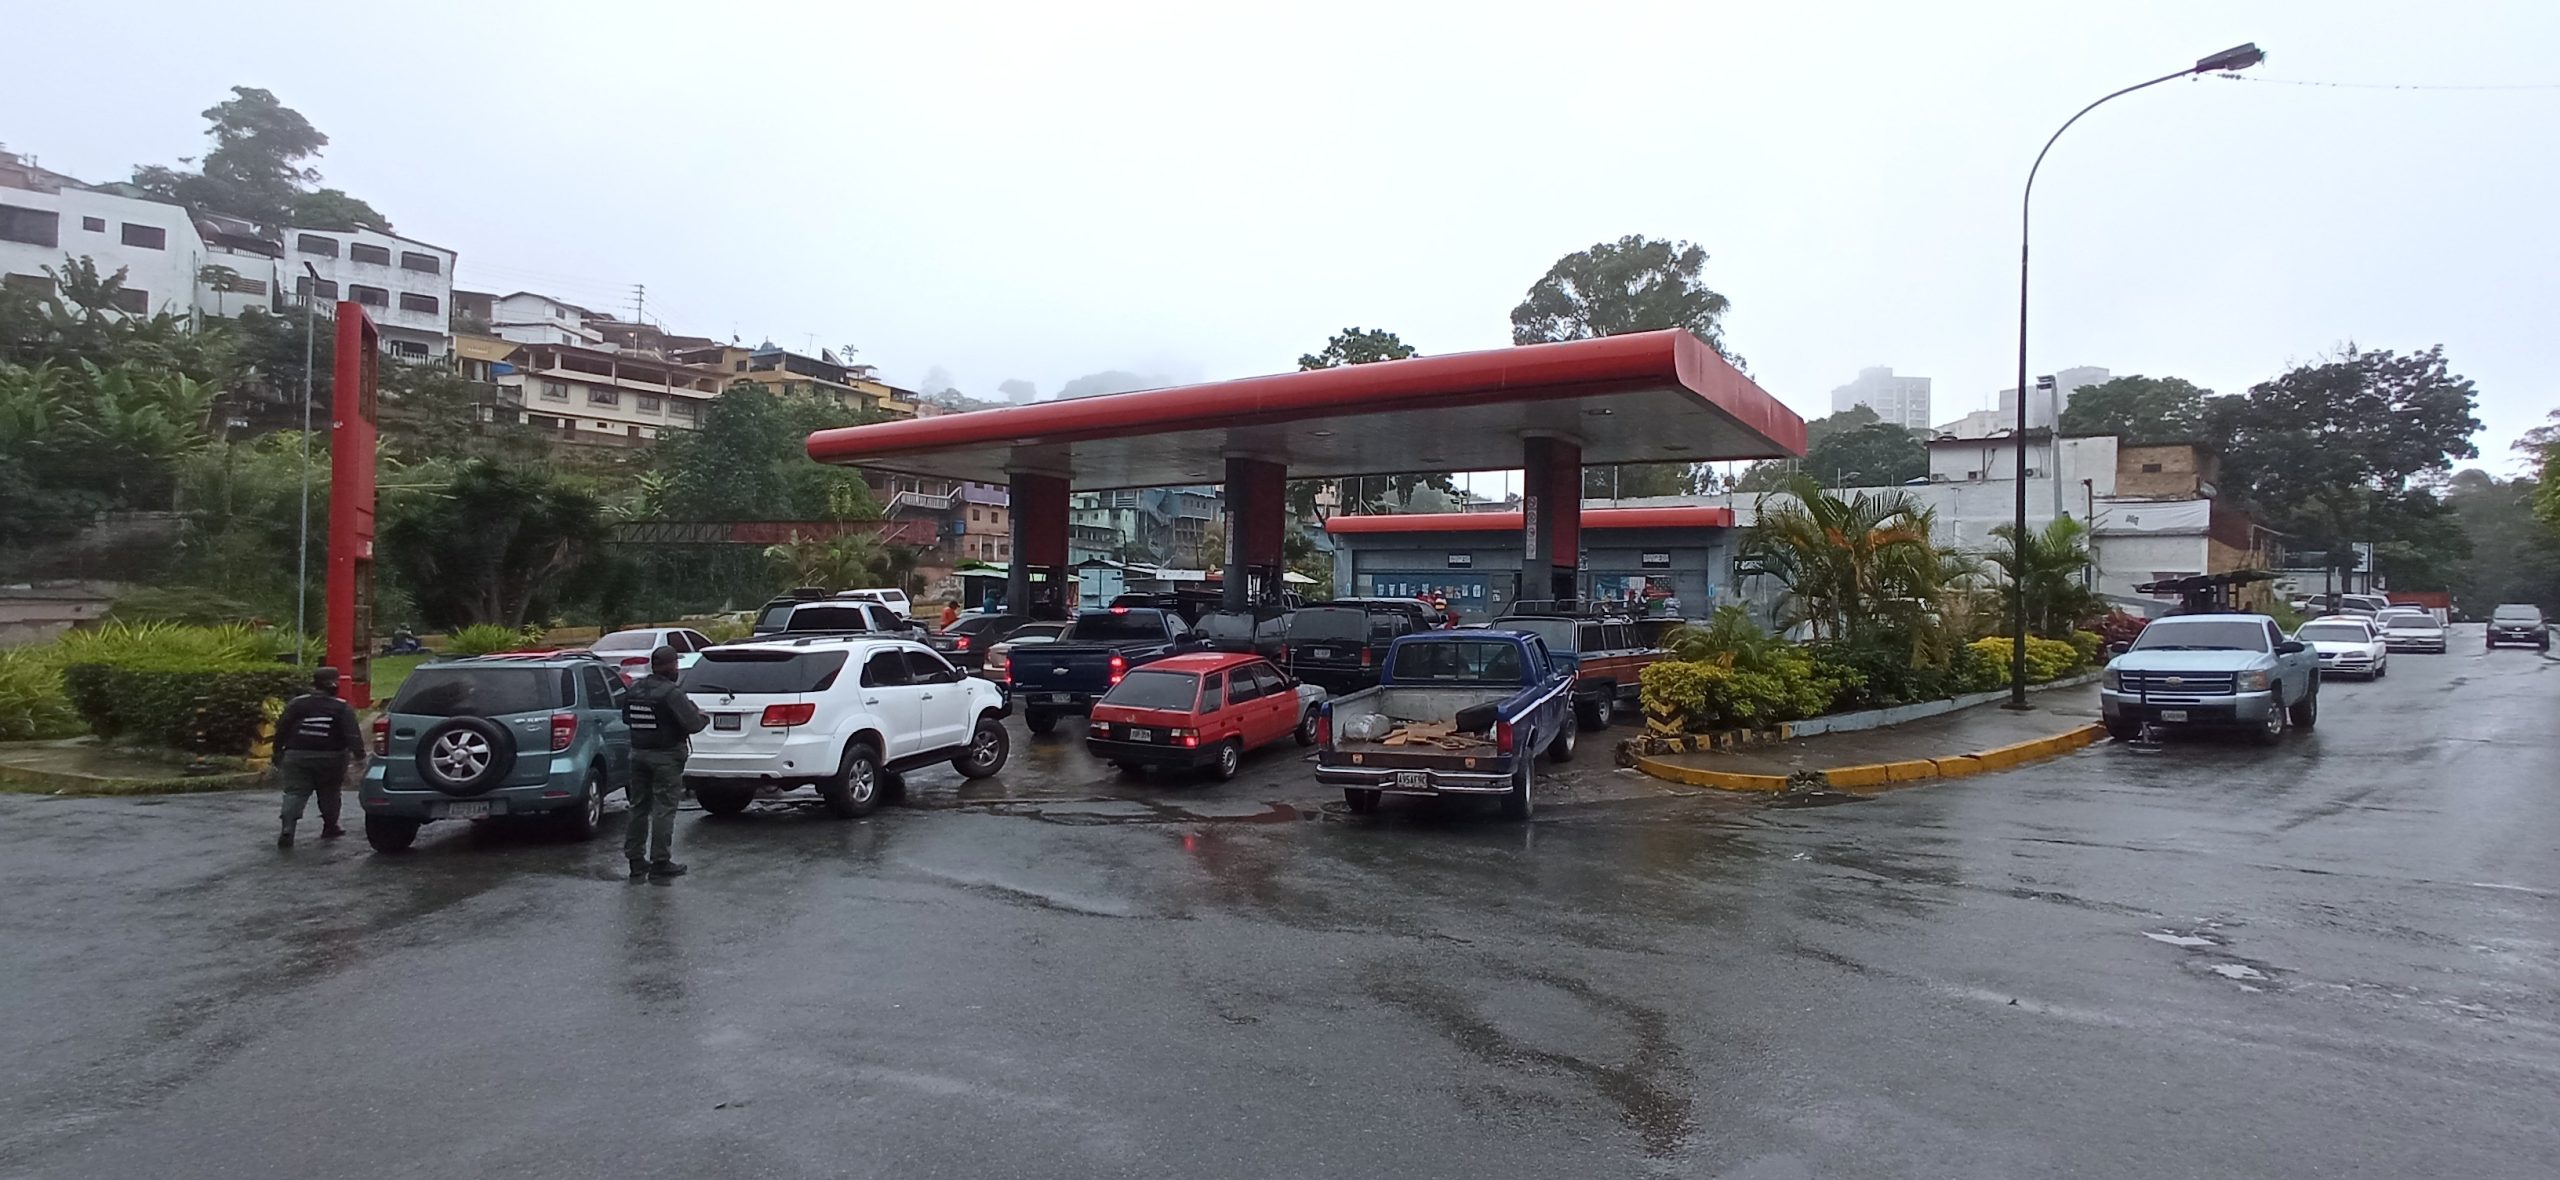 Lluvias retrasan surtido de combustible en estaciones de servicio